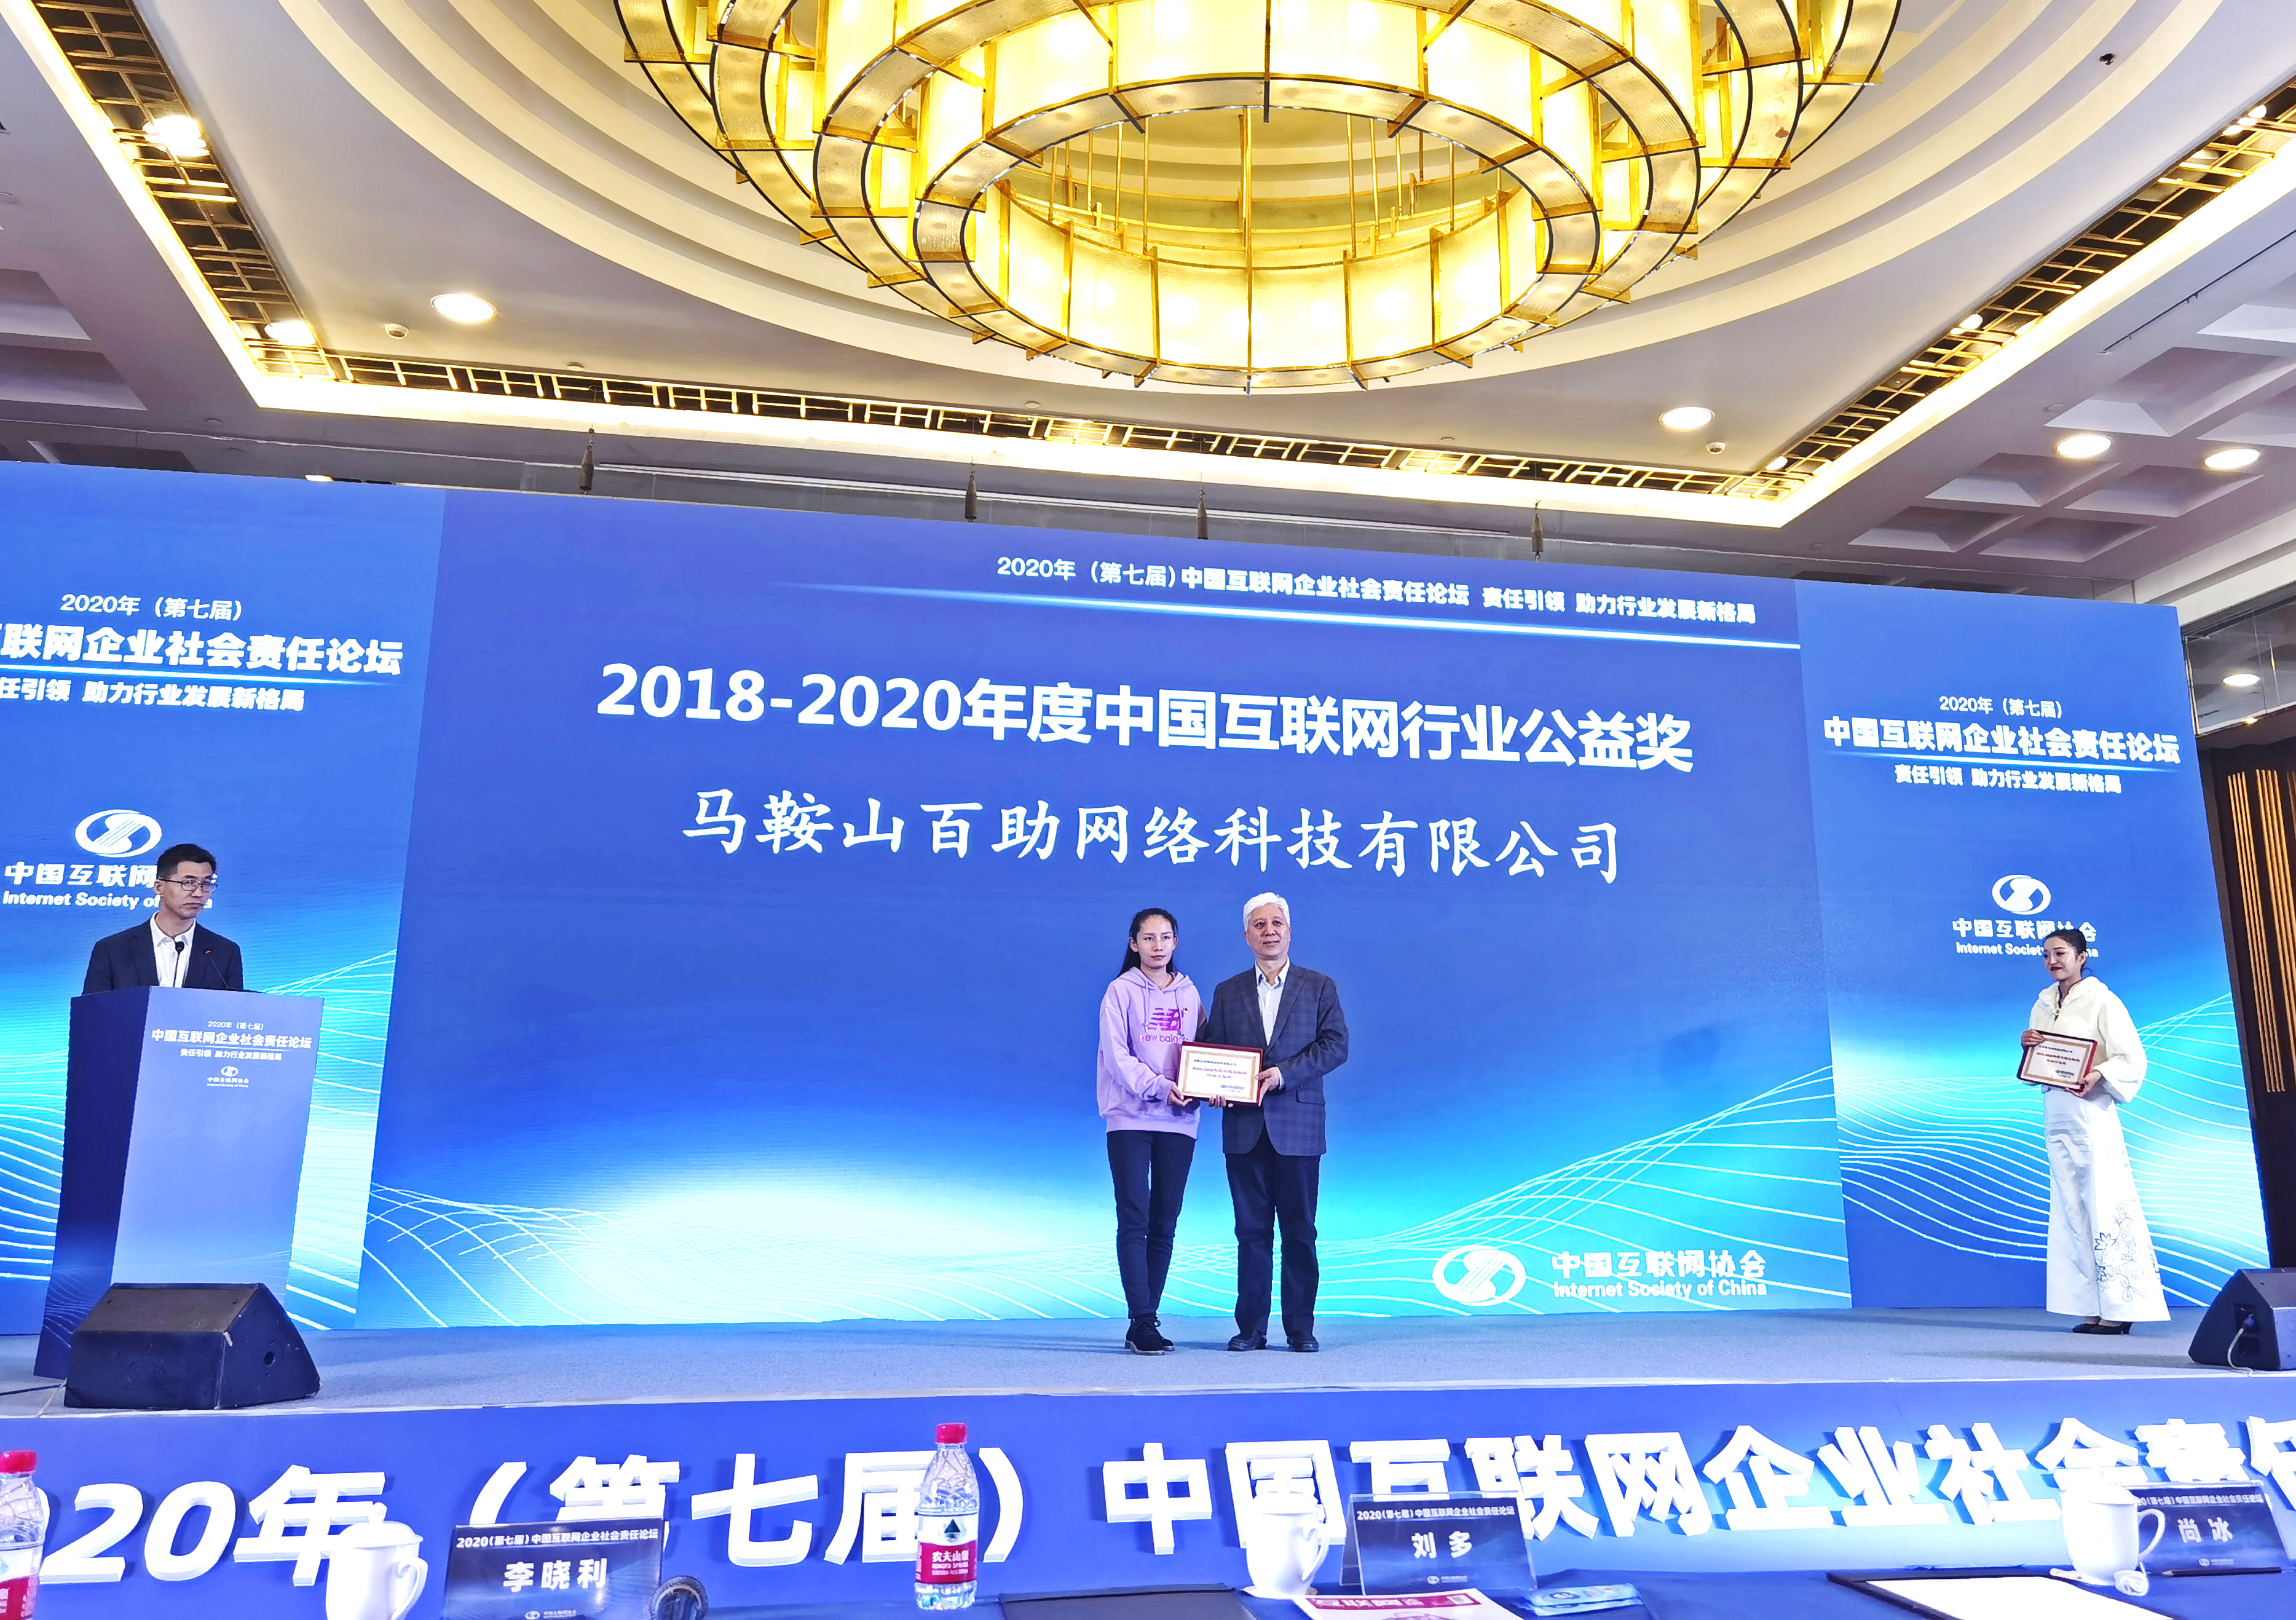 百助荣获“2018-2020年度中国互联网行业公益奖”